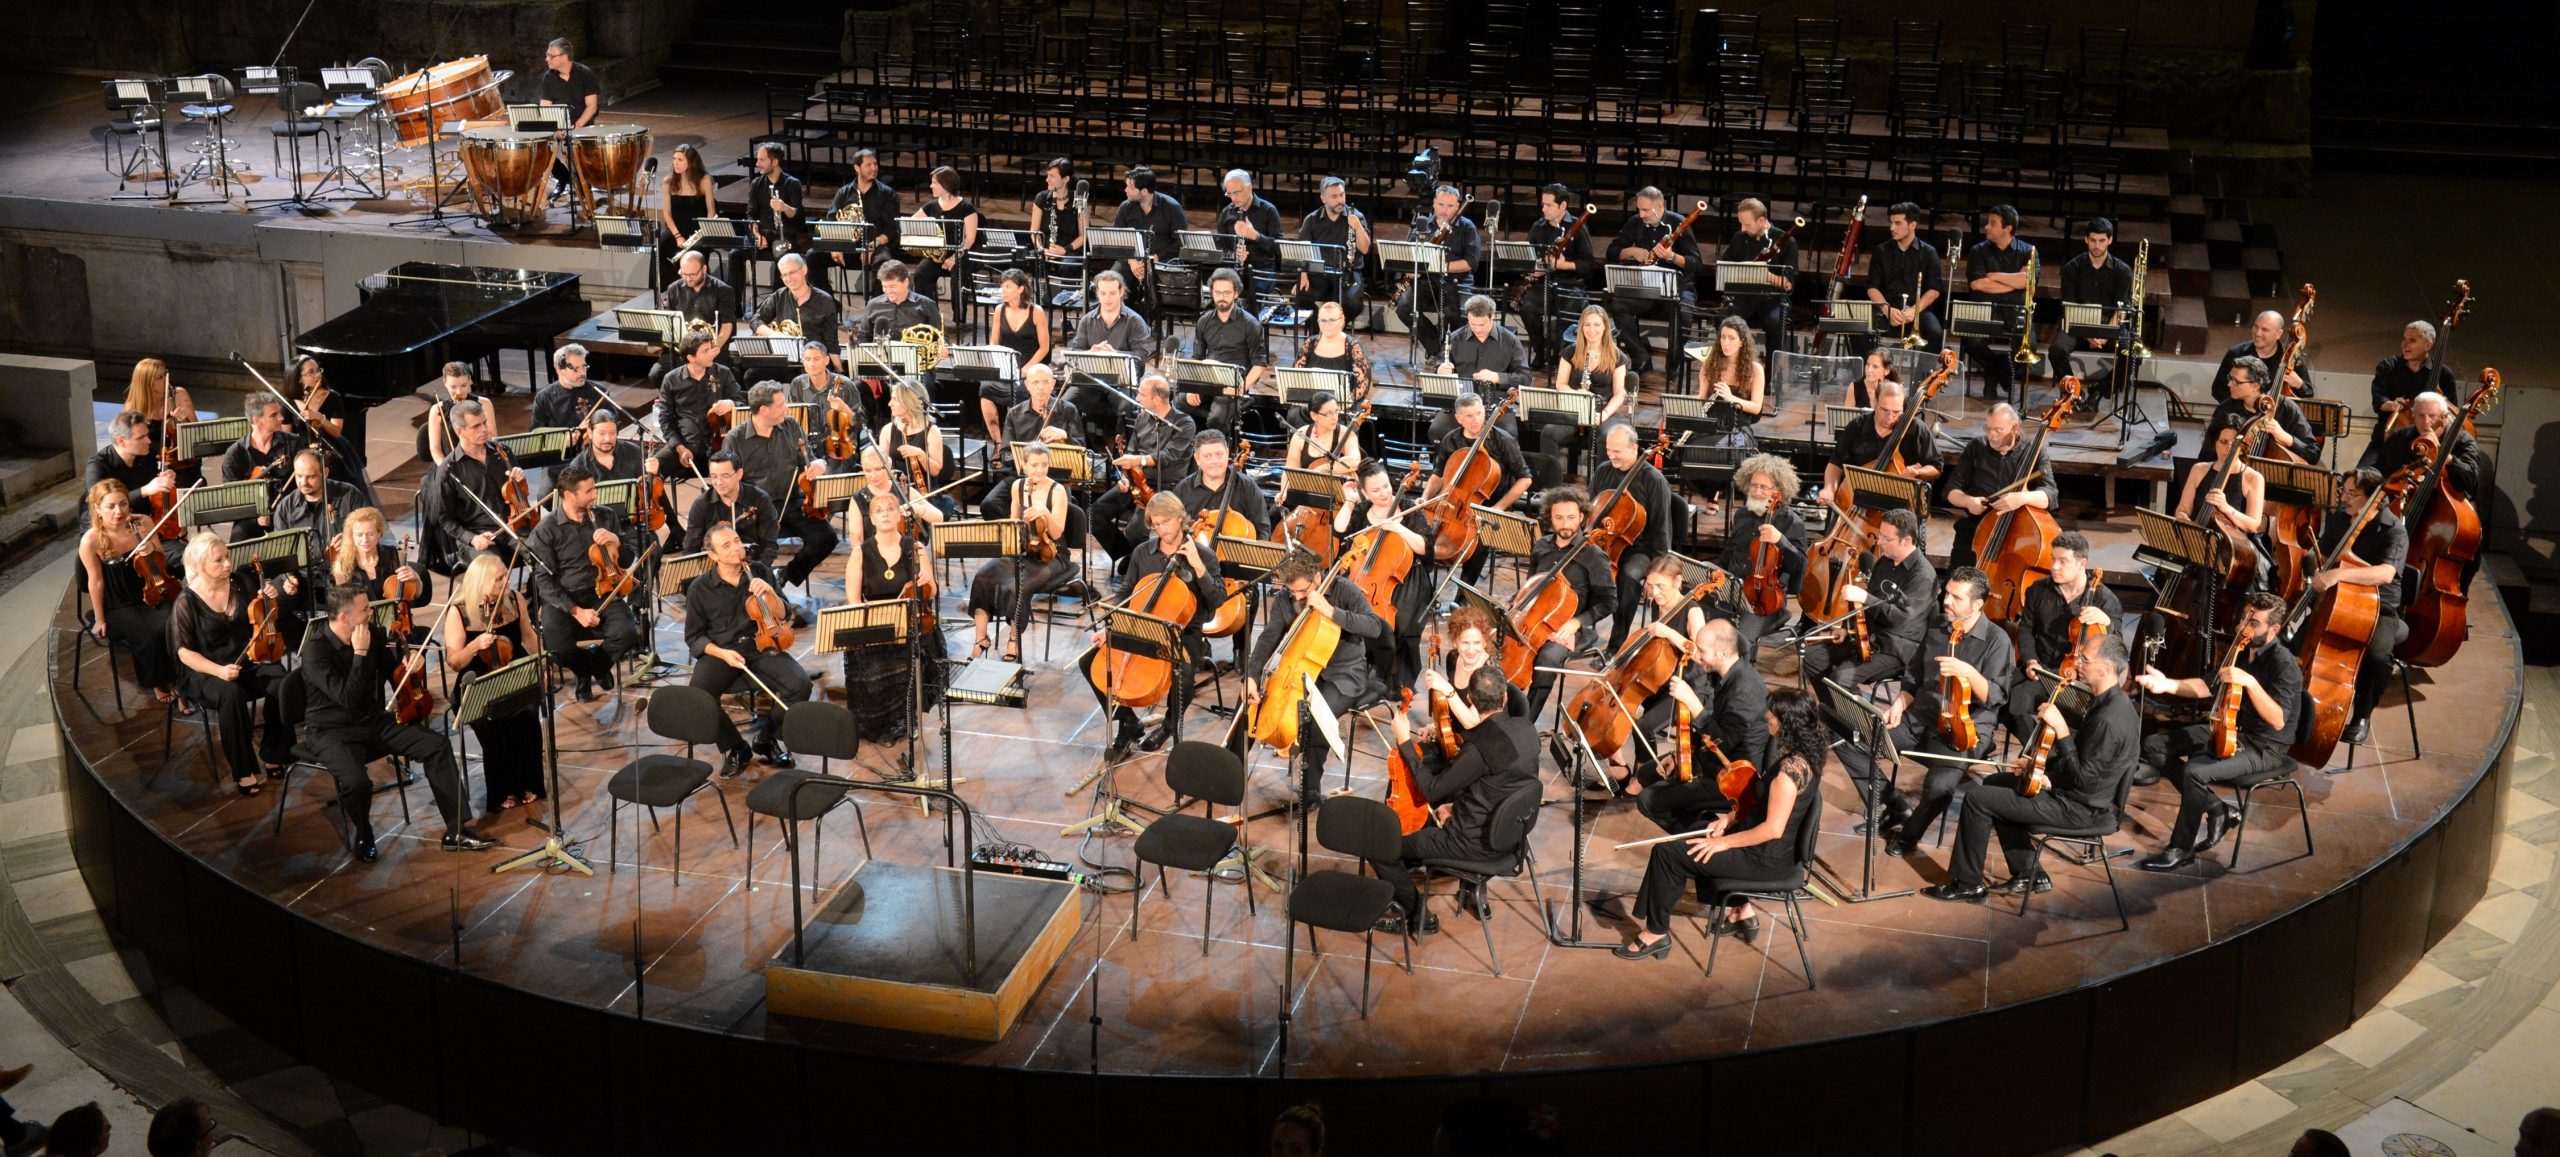 Τα Ξύλινα πνευστά της Εθνικής Συμφωνικής Ορχήστρας ΕΡΤ στο Φεστιβάλ Νάξου – 02.08.2020